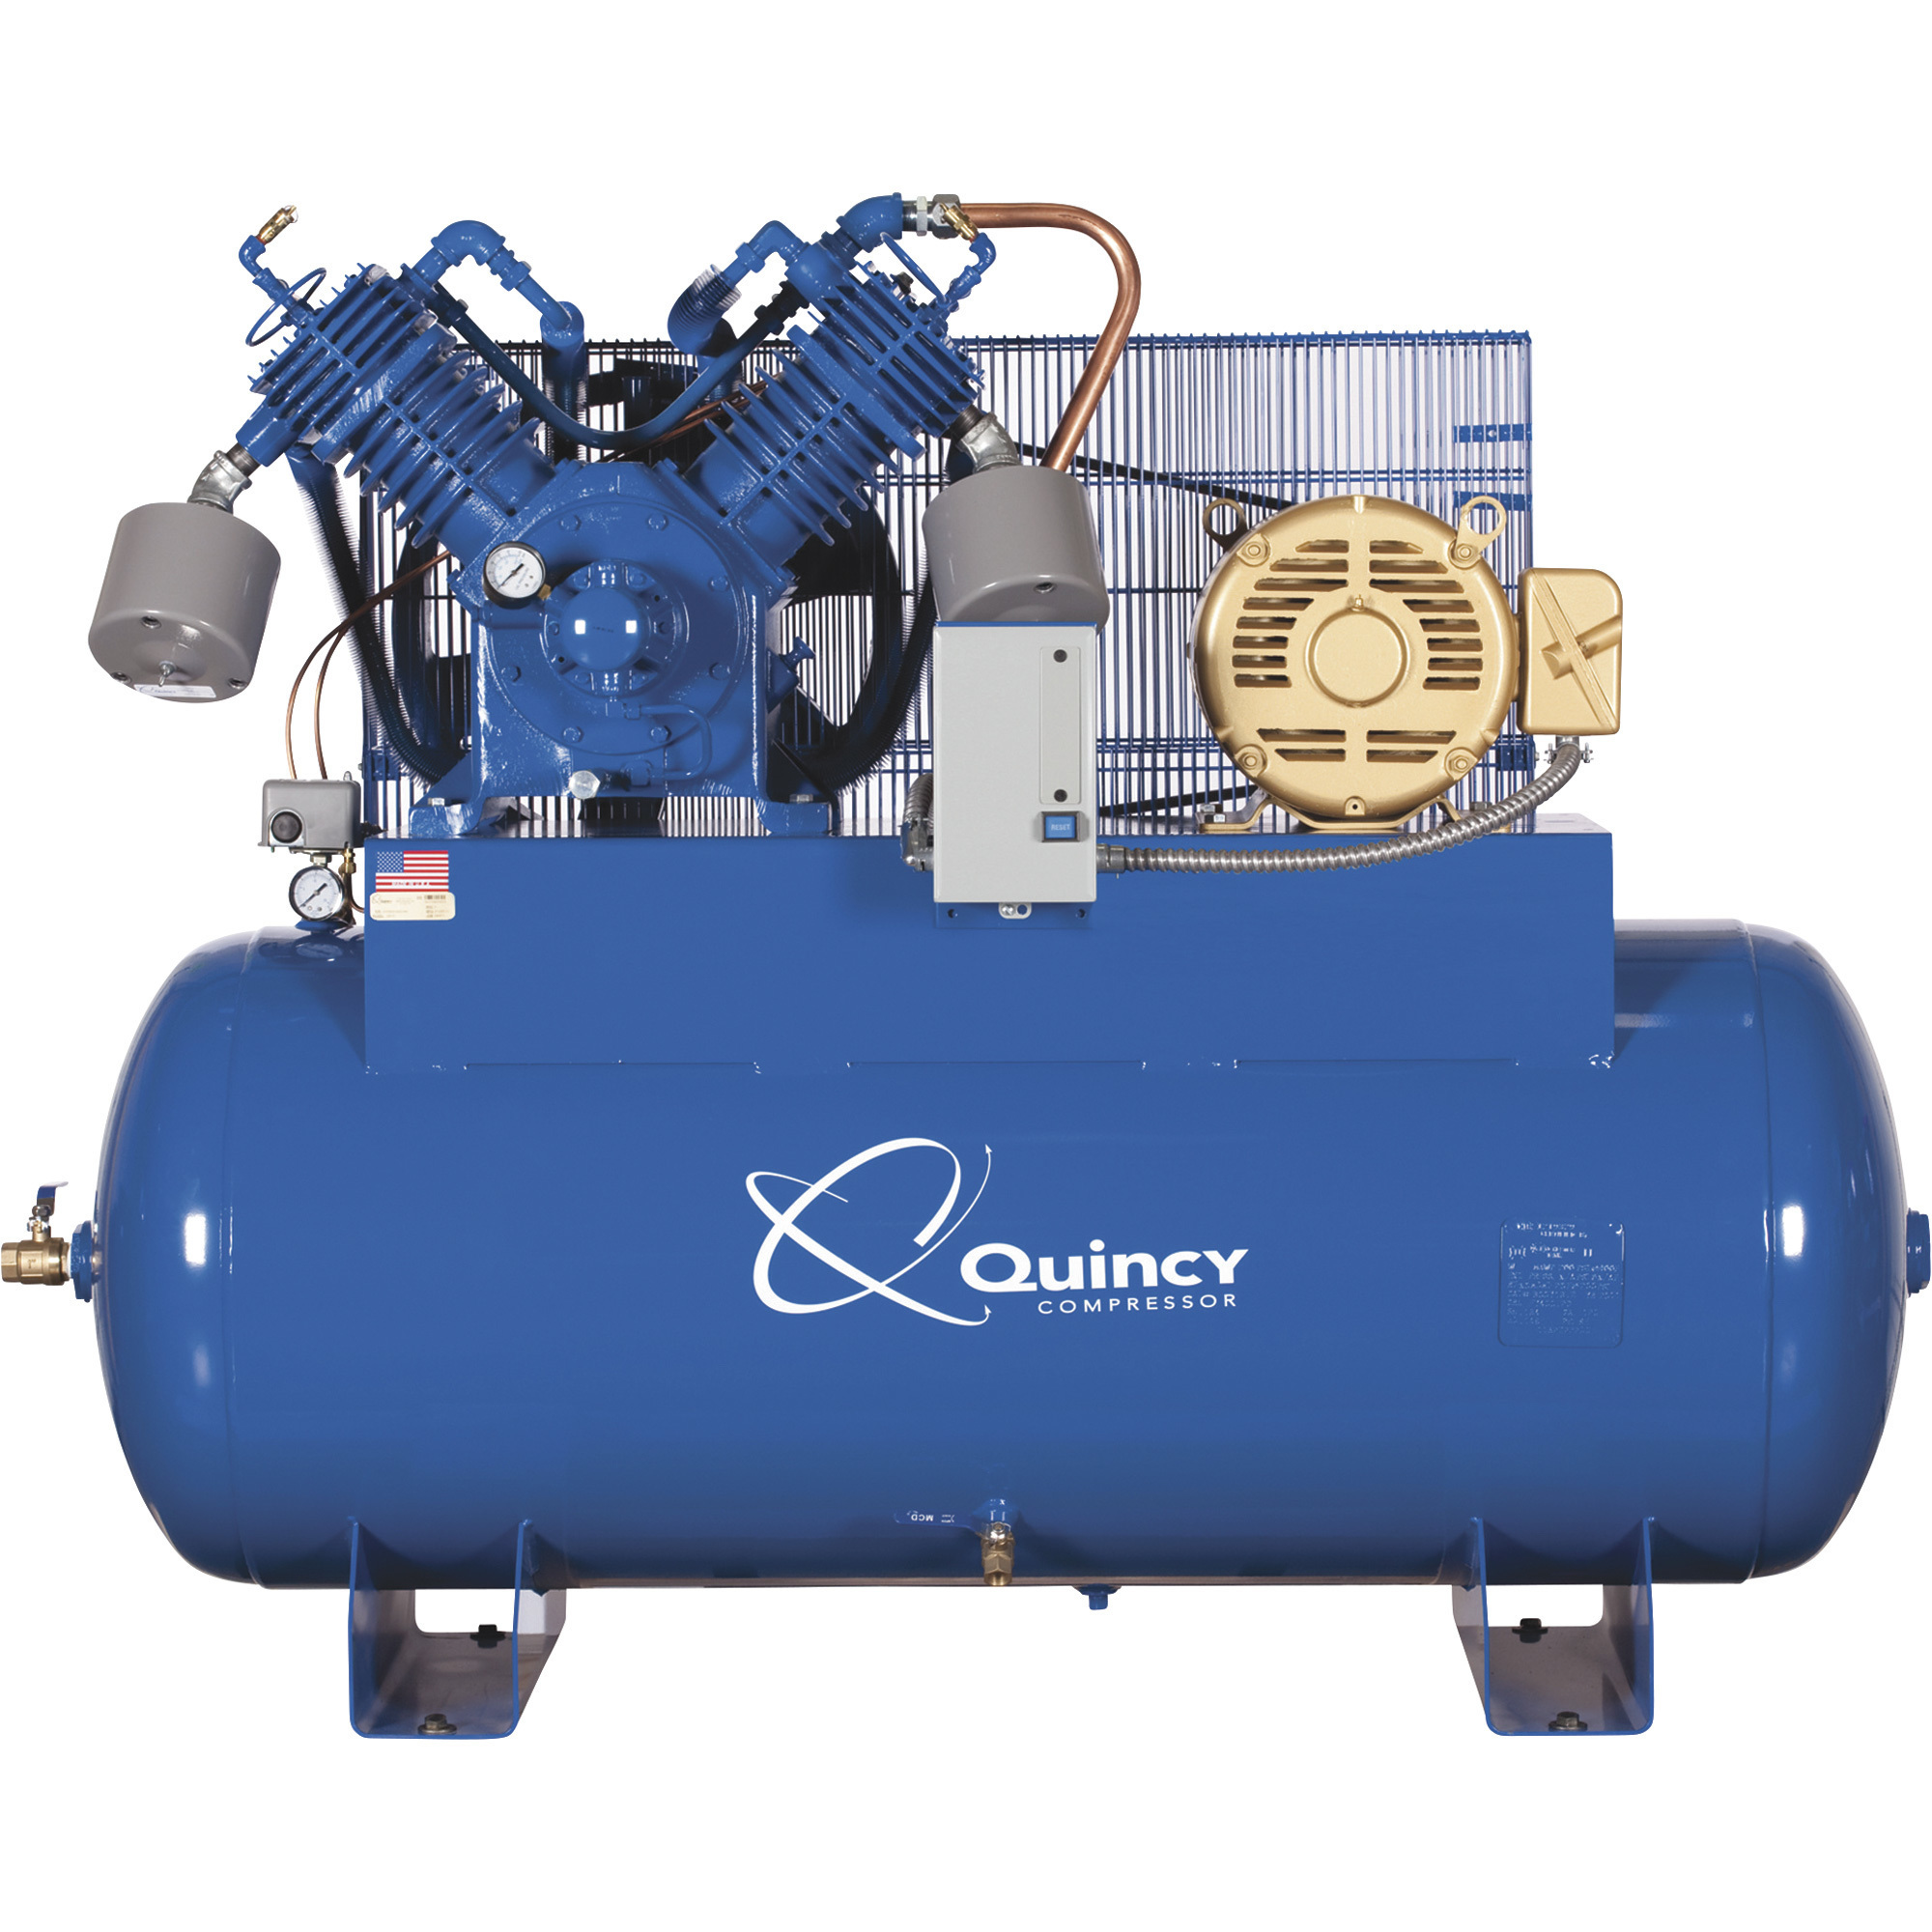 Quincy Compressor 2020021302